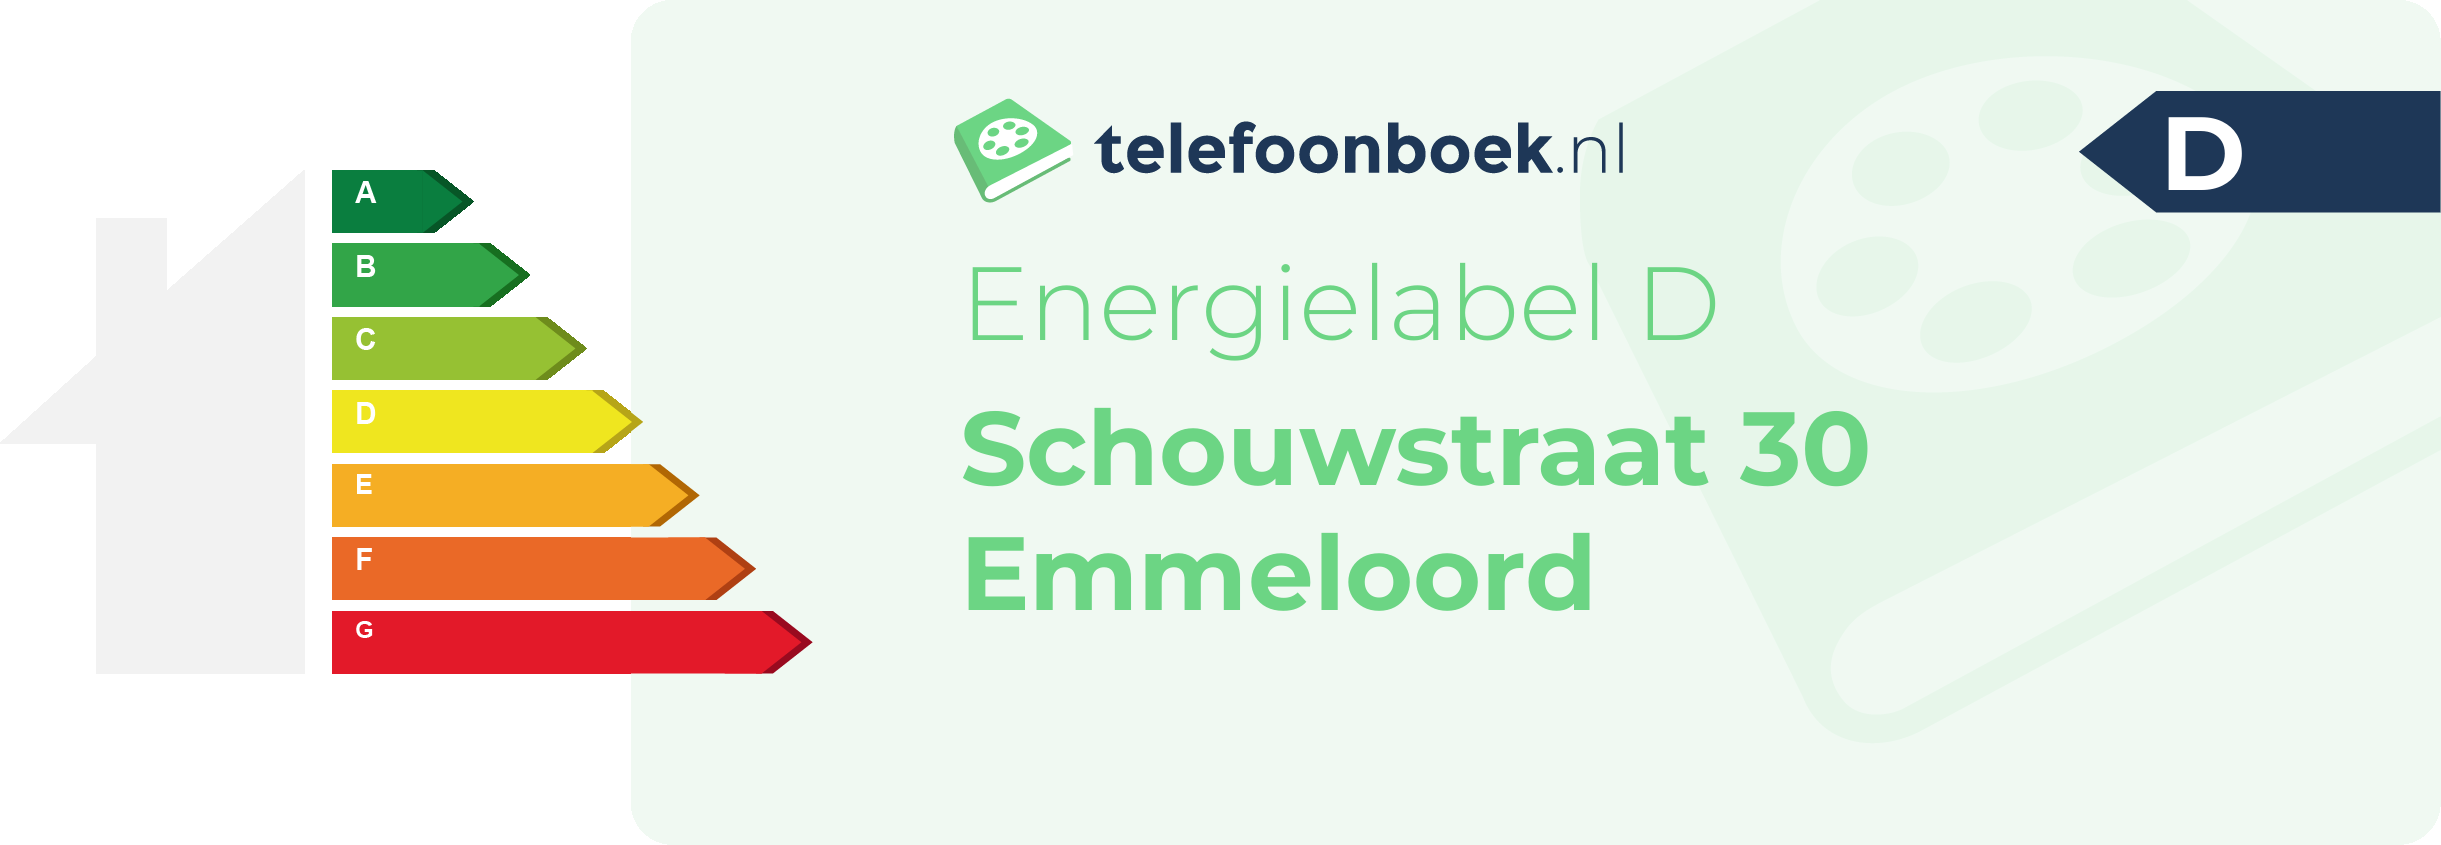 Energielabel Schouwstraat 30 Emmeloord